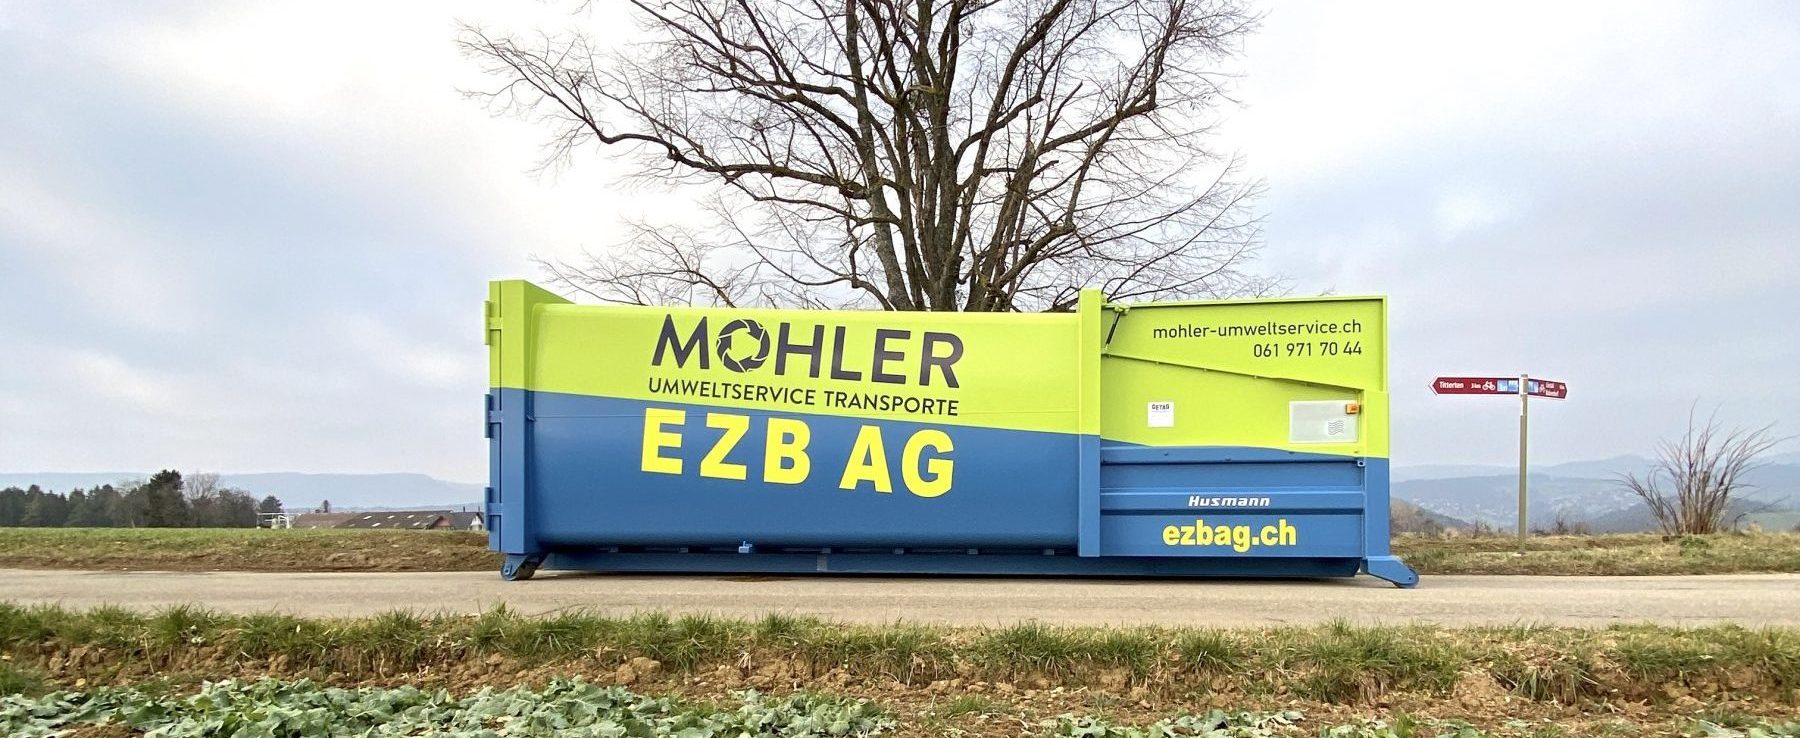 EZB AG / Mohler Umweltservice Transporte | JOST Beschriftungen Liestal